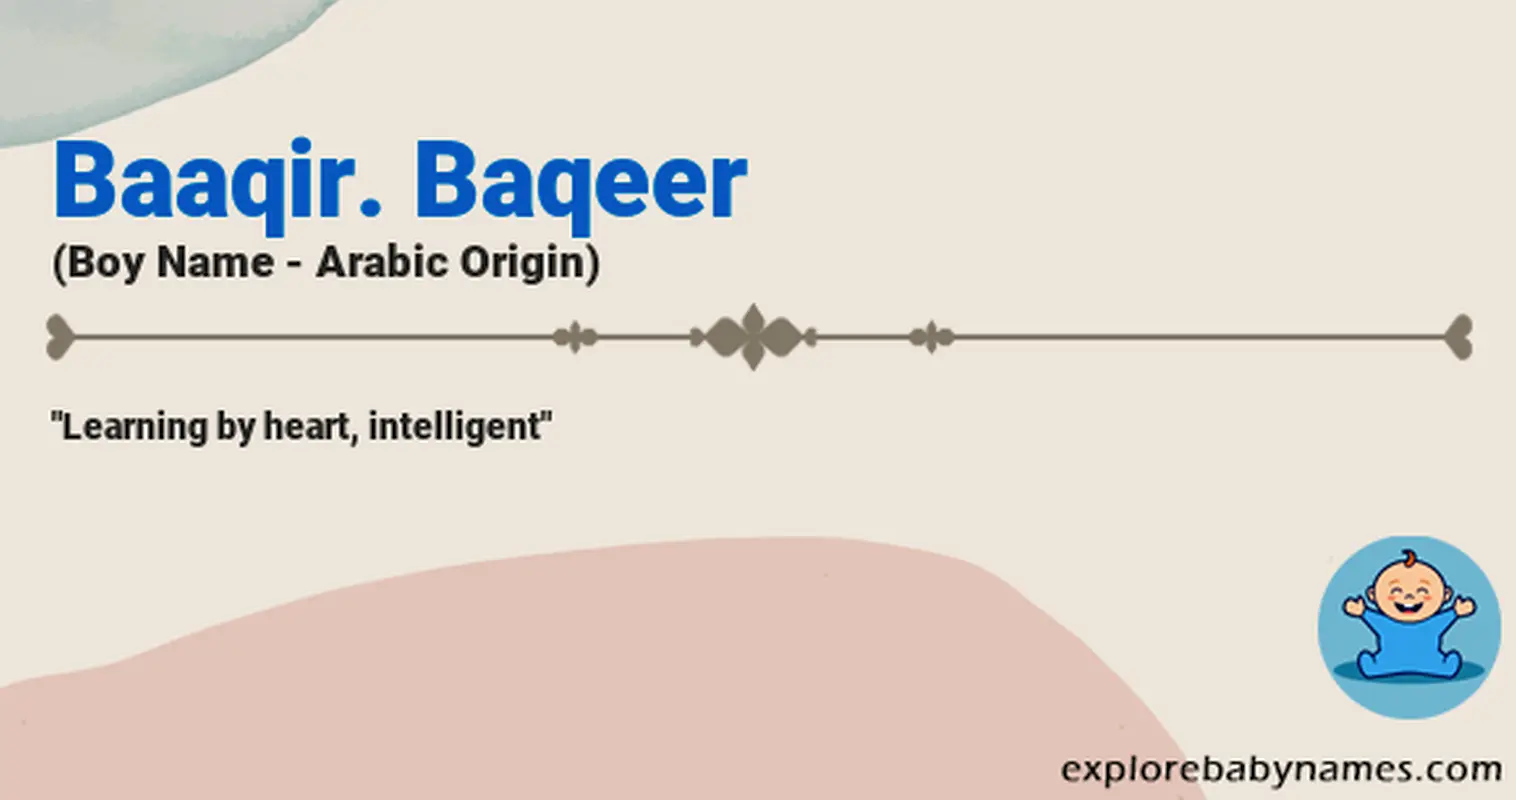 Meaning of Baaqir. Baqeer